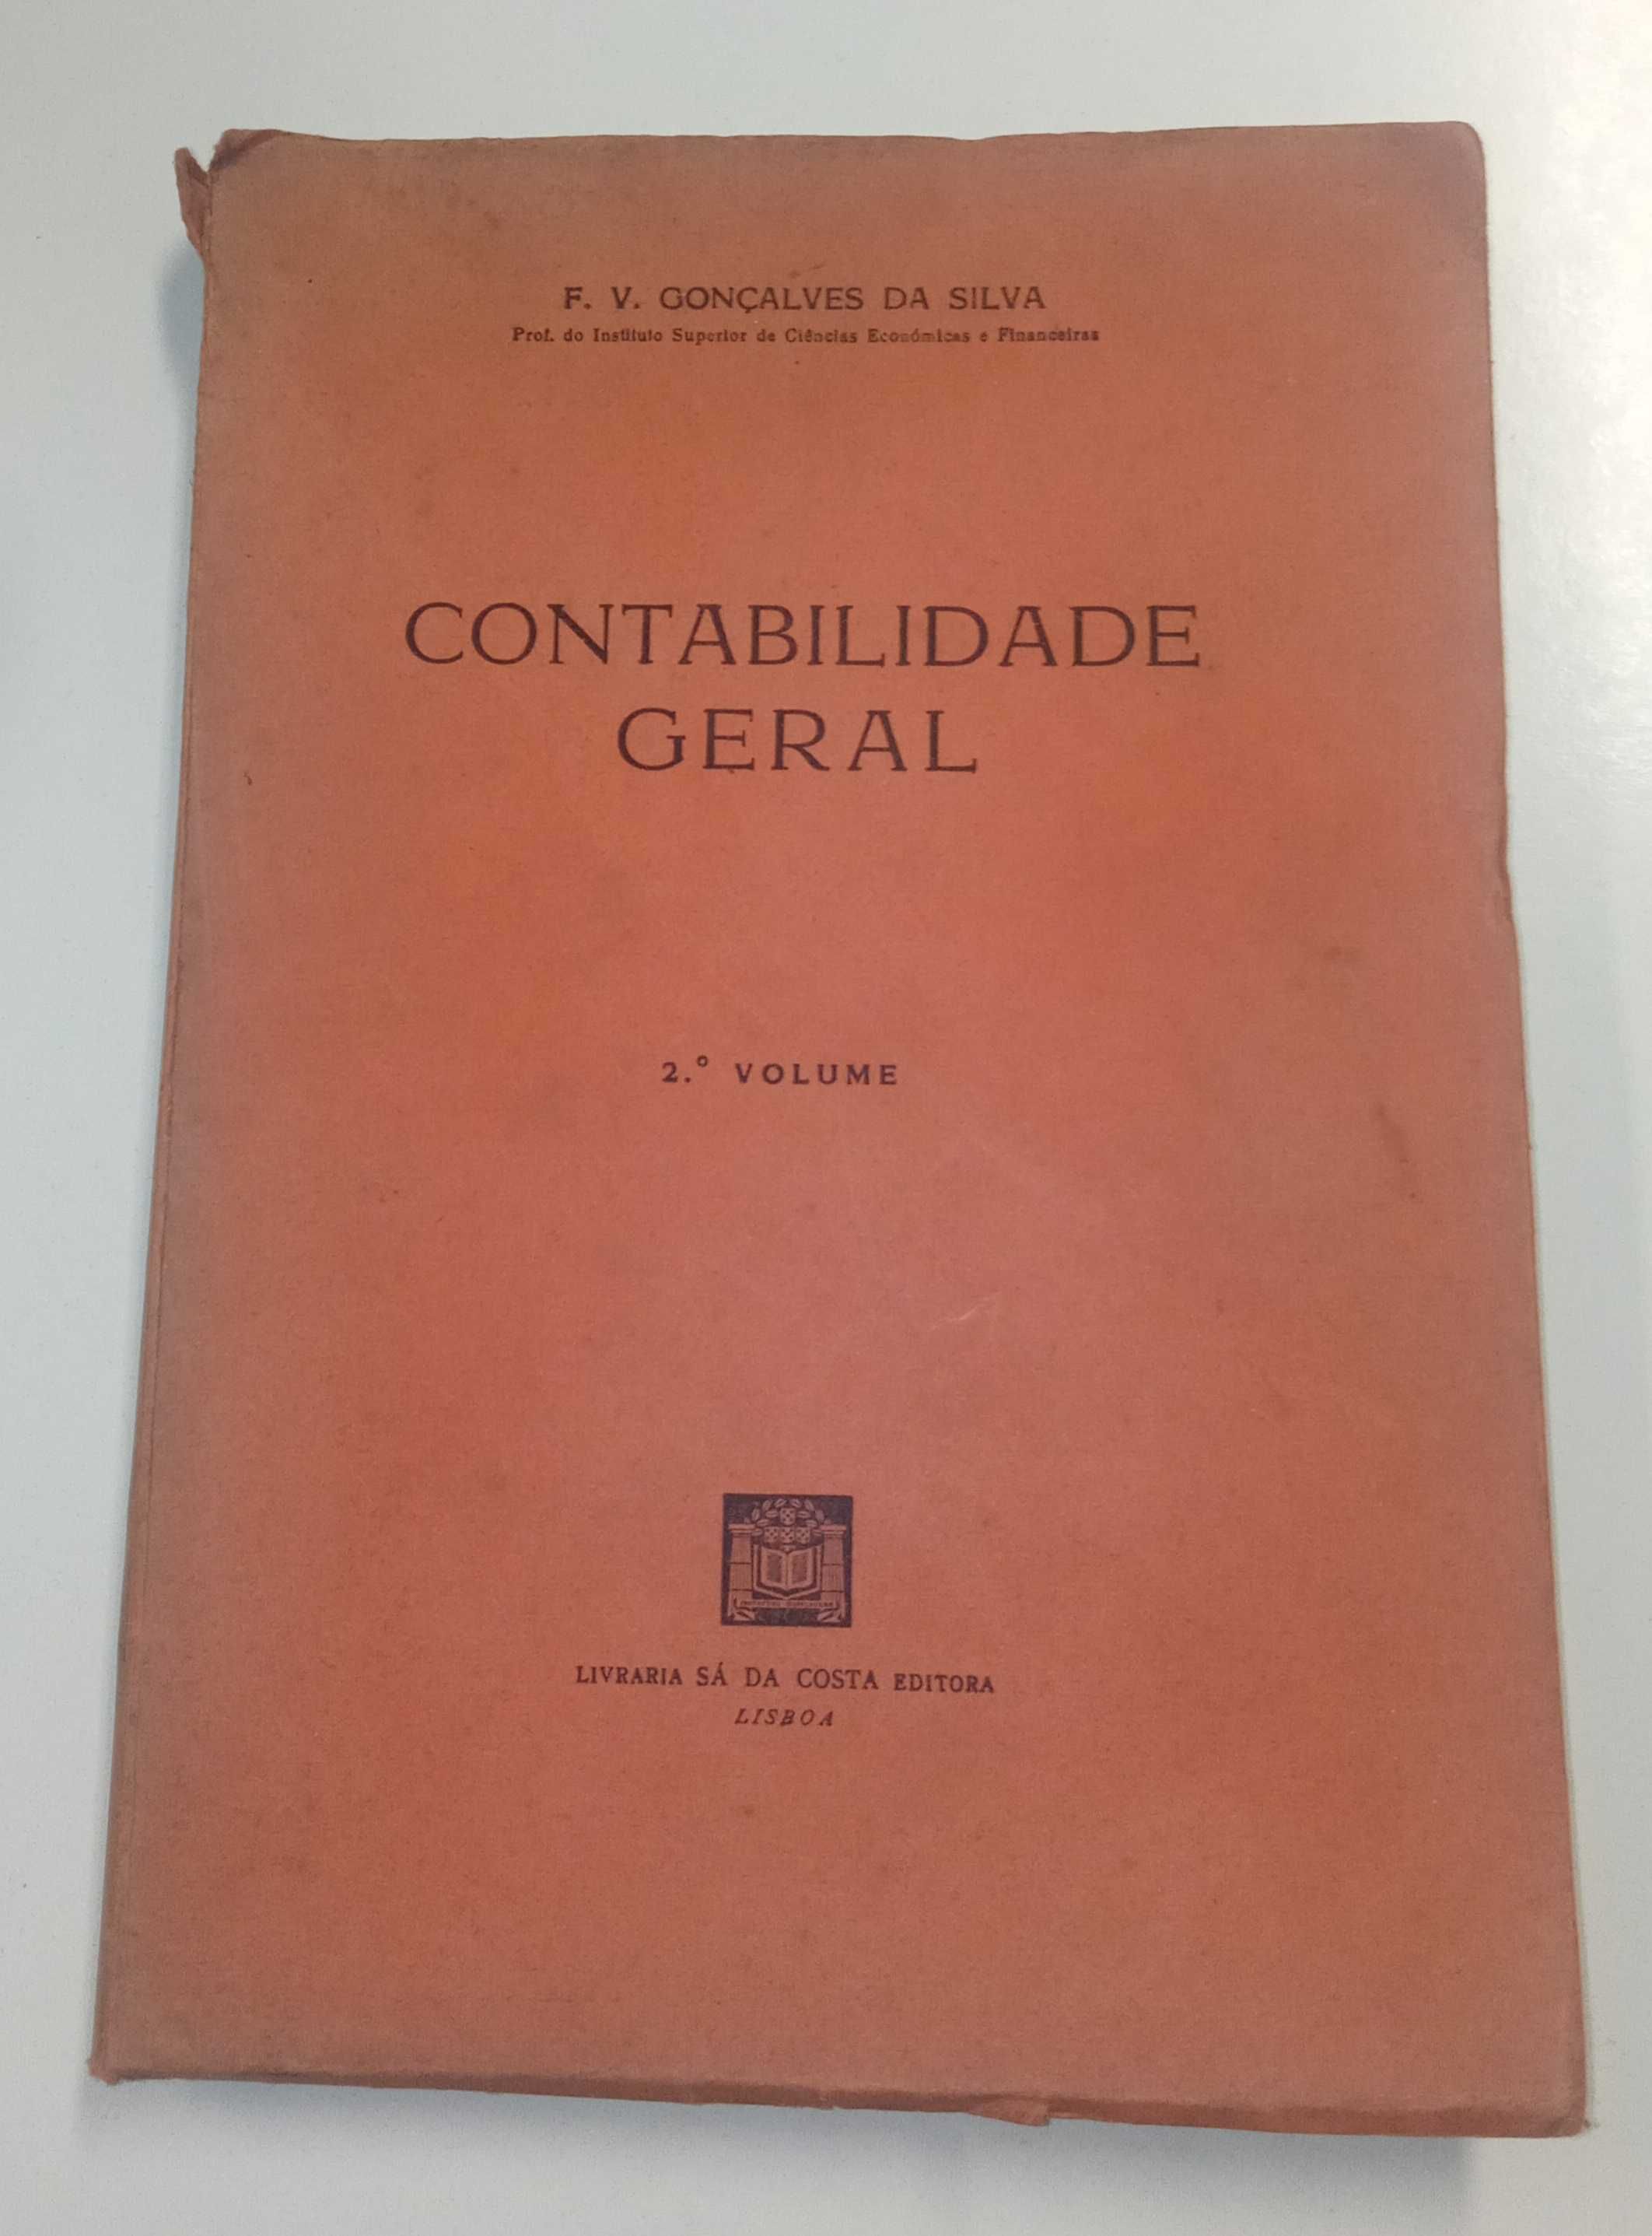 1a edição: Contabilidade Geral, de F. V. Gonçalves da Silva